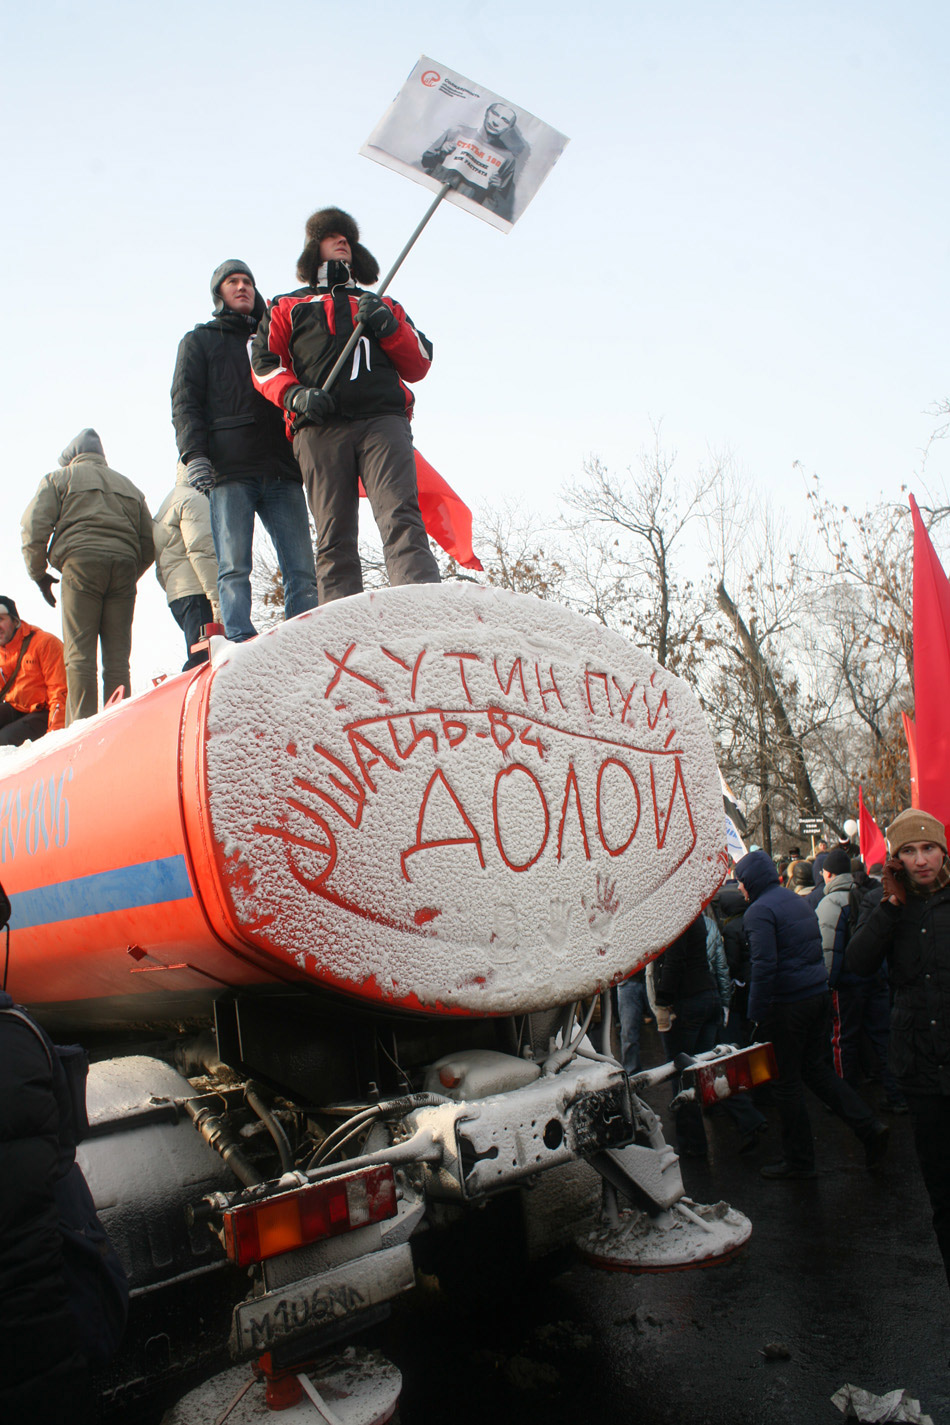 Шествие и митинг на Болотной 4 февраля 2012 года